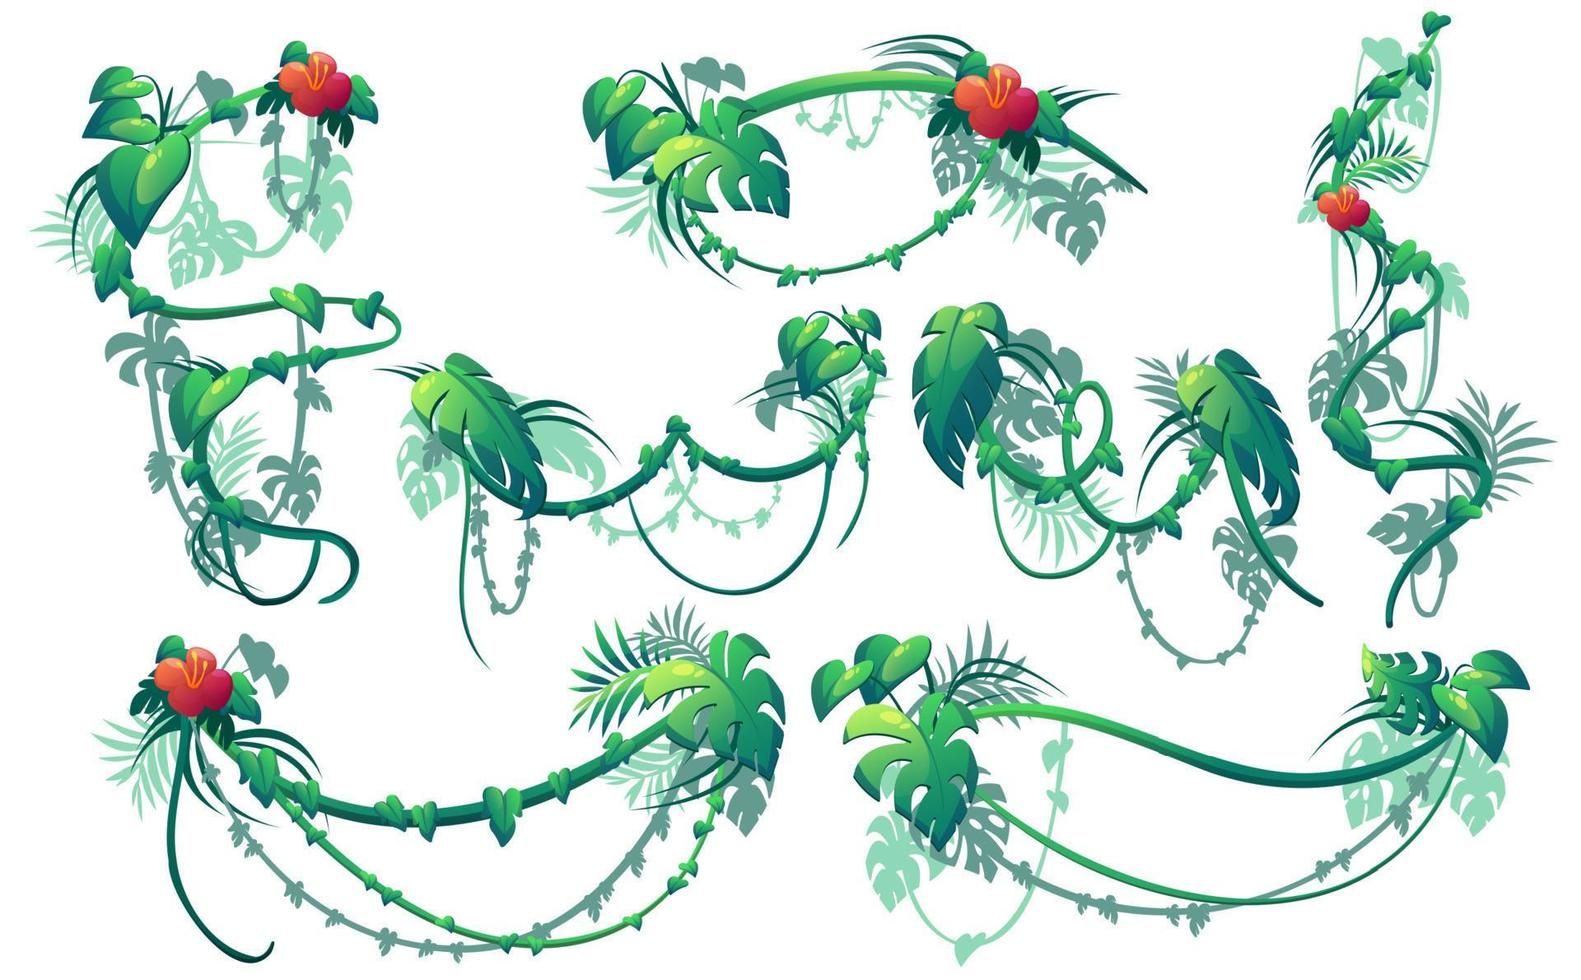 djungel kryp växter, lianas med blommor vektor